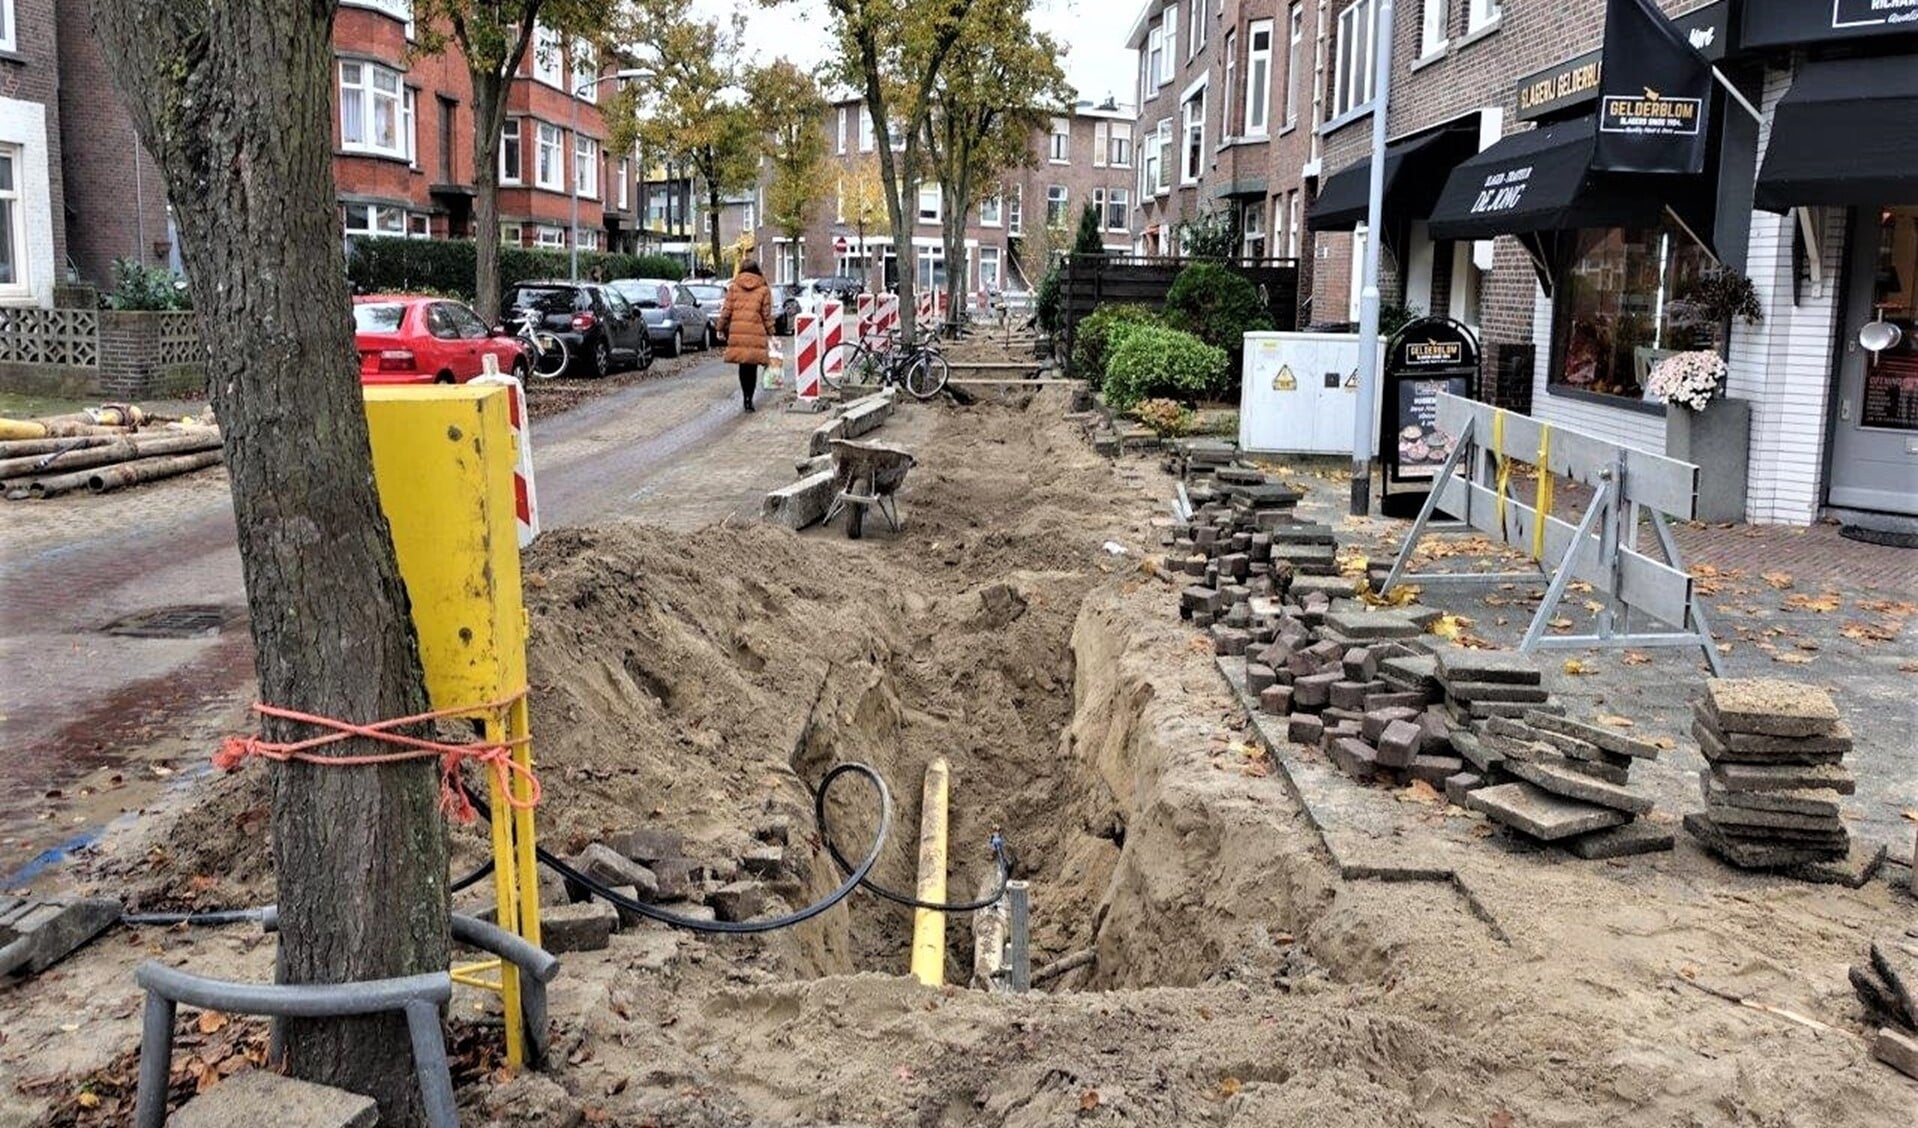 De werkzaamheden in o.a. de Van Sevenbergestraat en Van der Marckstraat in Voorburg drijven de bewoners tot wanhoop (foto: Ap de Heus).